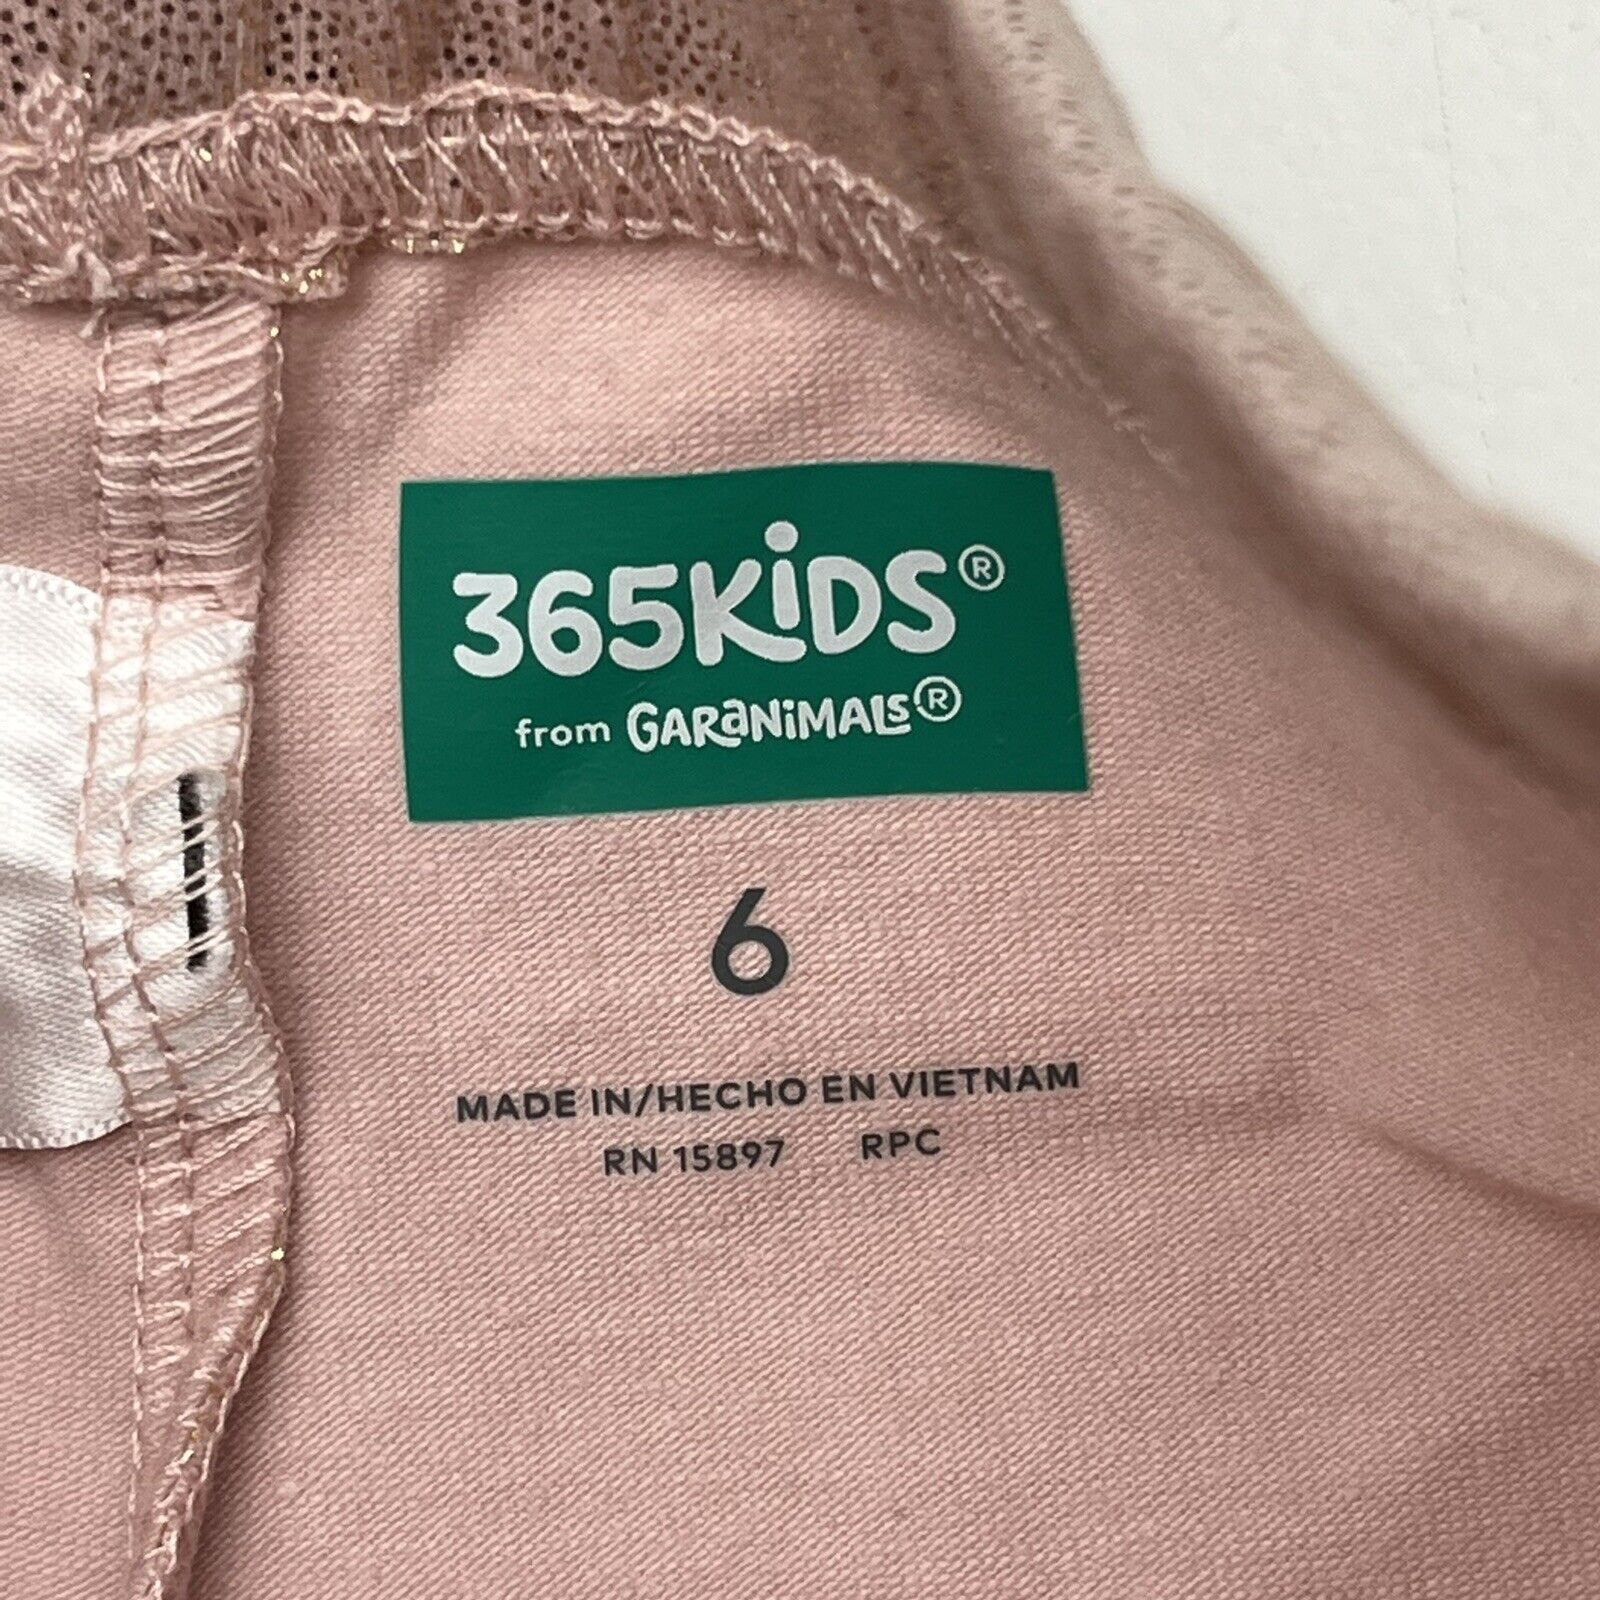 365 Kids Garanimals Pink Matalic Leggings Girls Size 6 NEW - beyond exchange